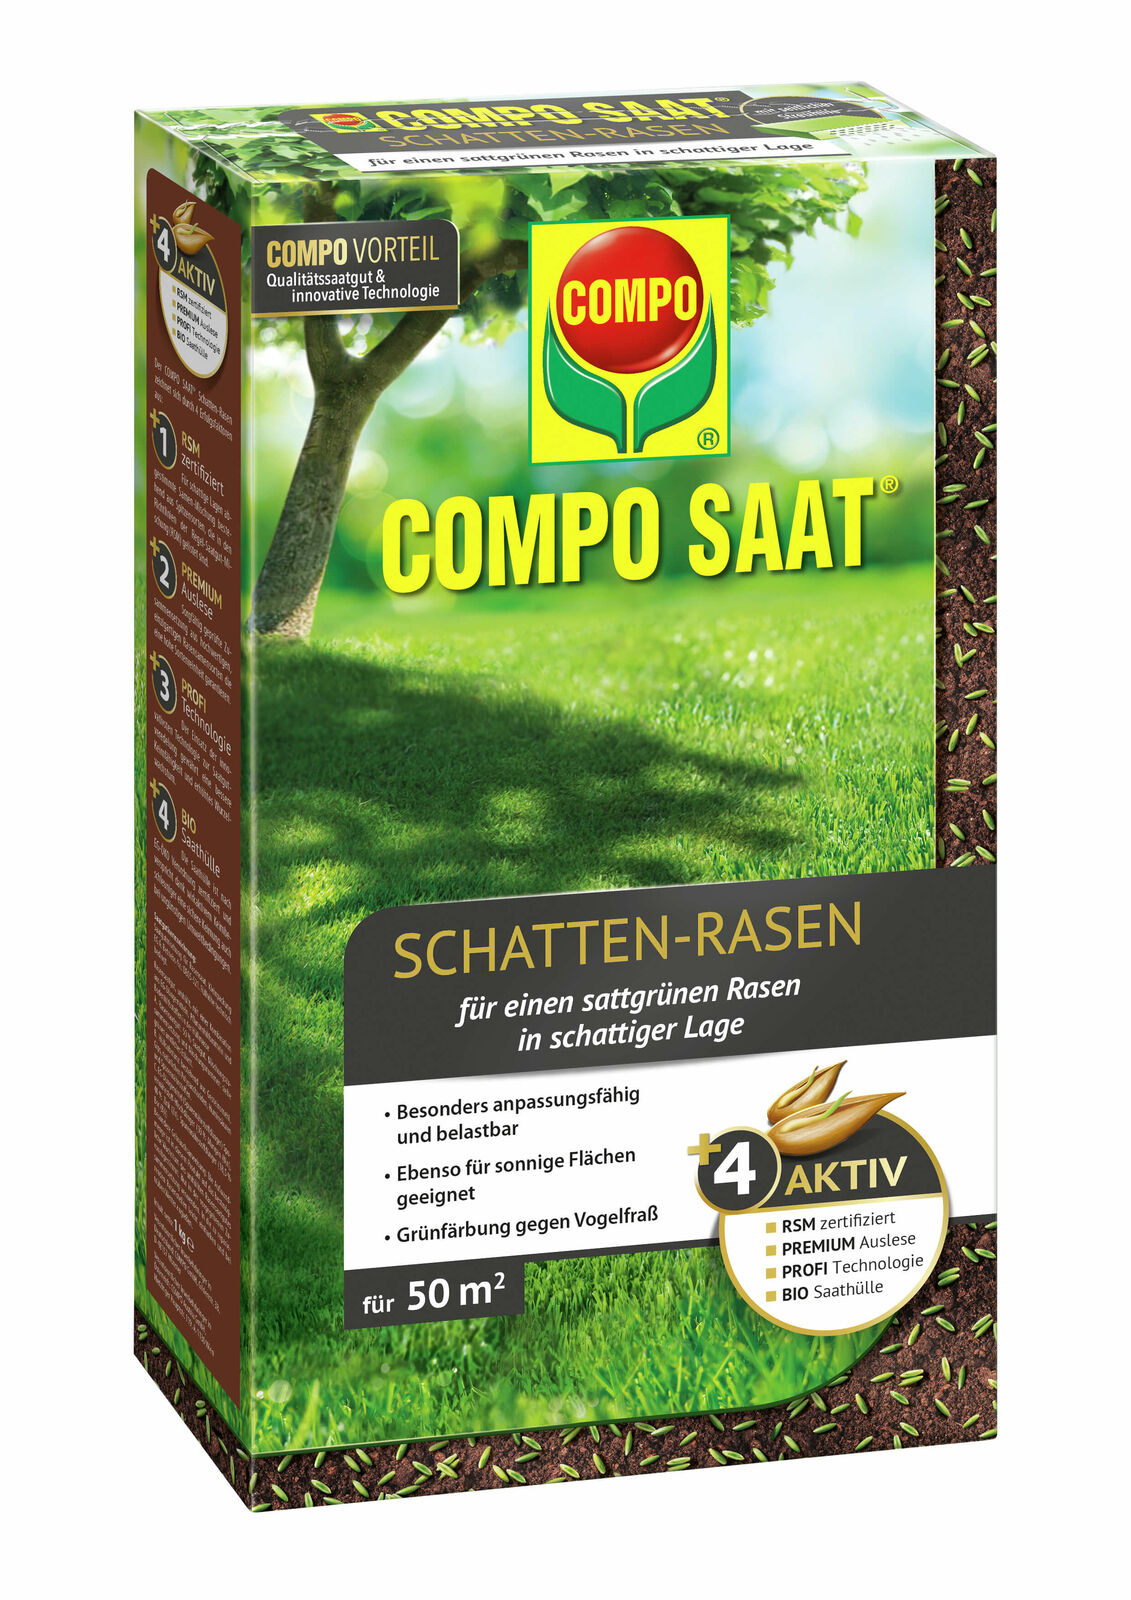  COMPO SAAT Schatten-Rasen, 1kg